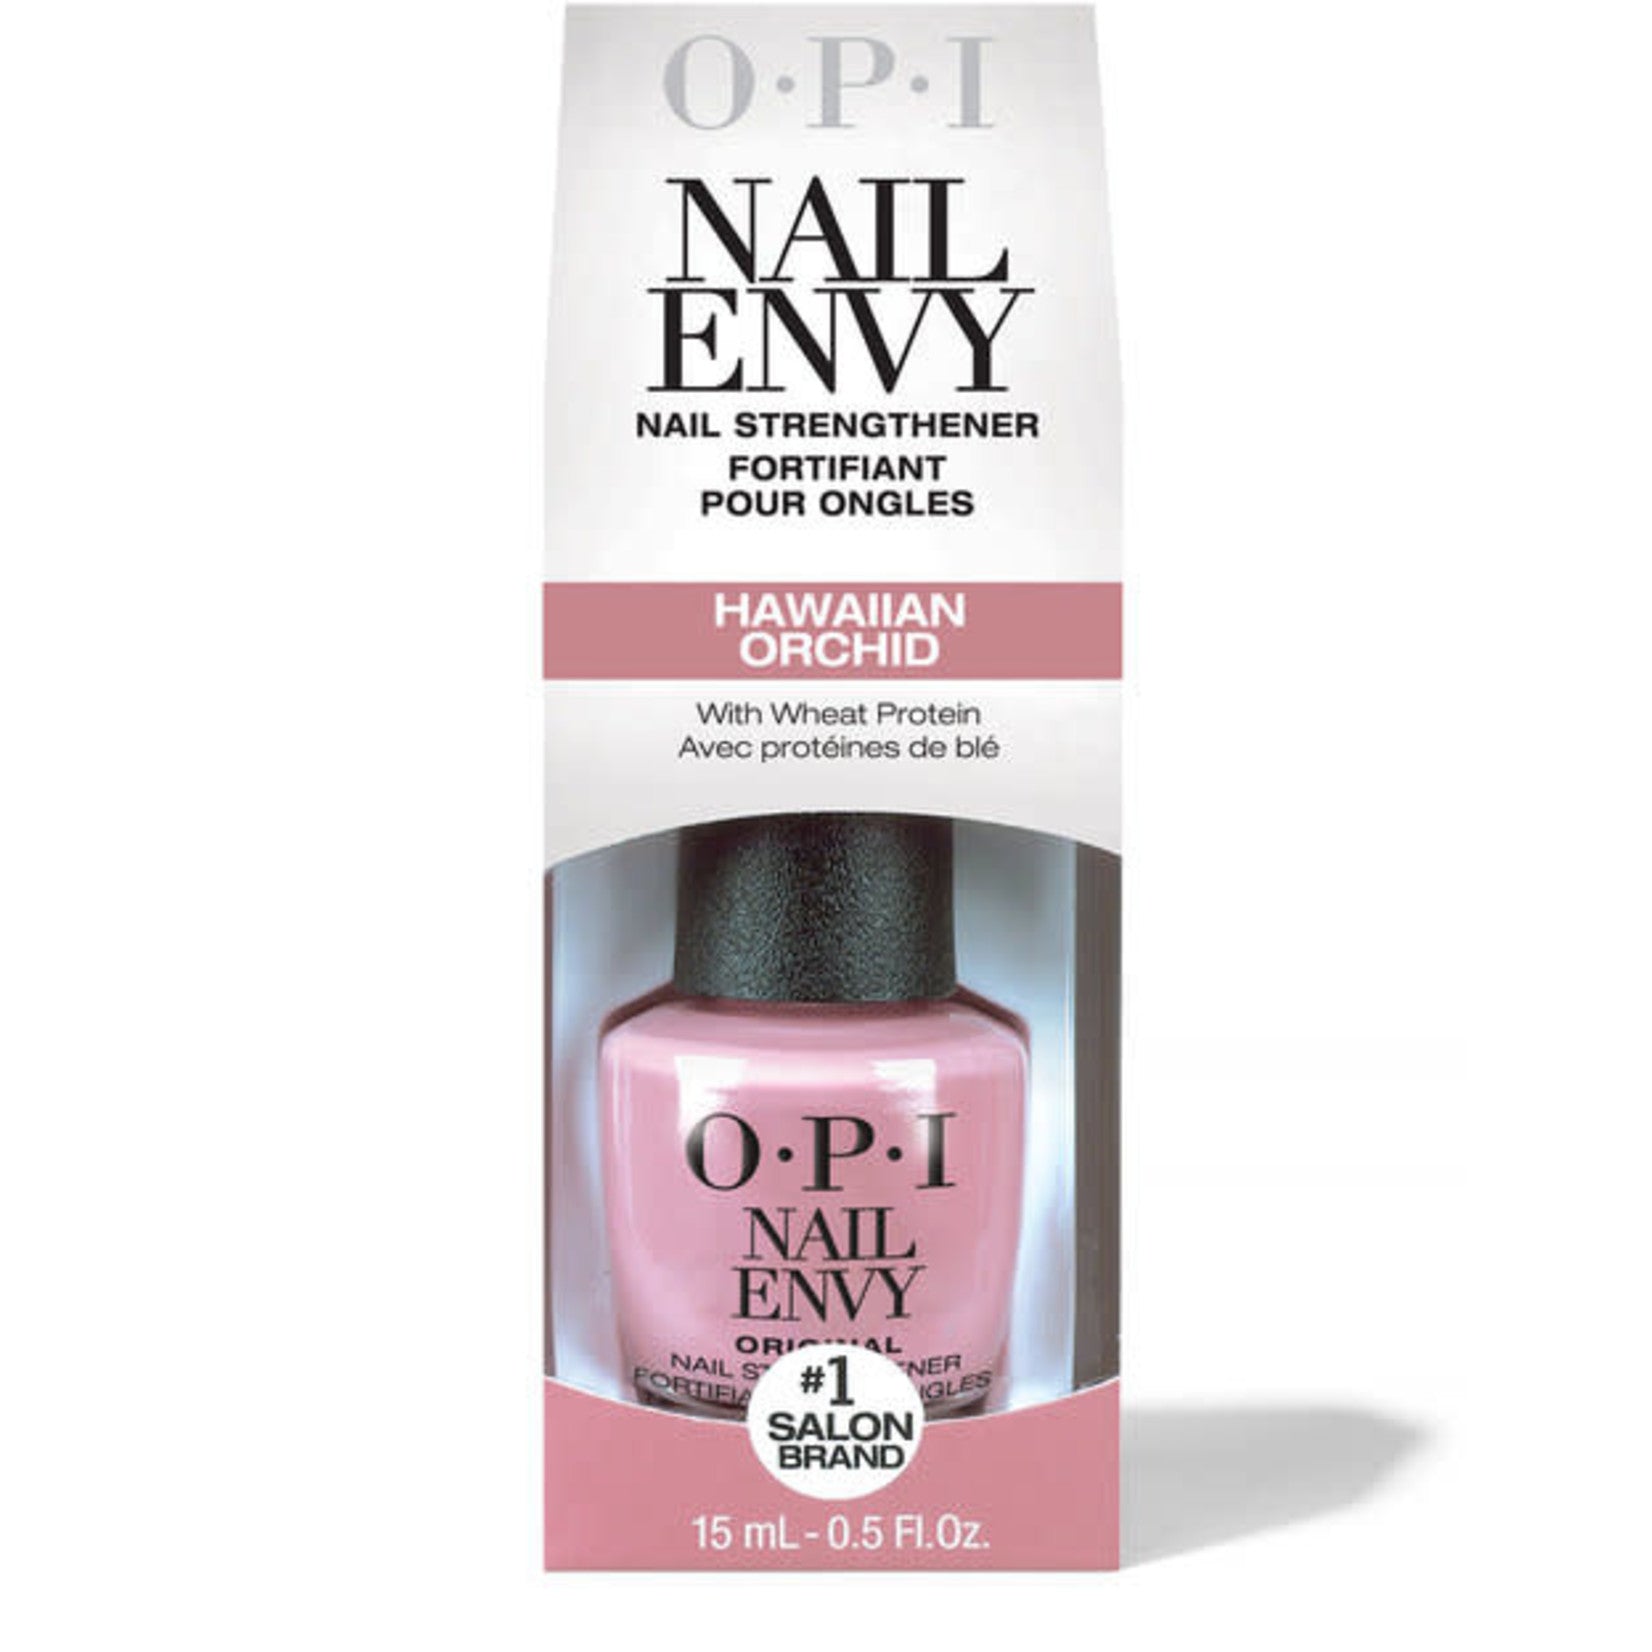 OPI NT 220 NAIL ENVY HAWAIIAN ORCHID - Secret Nail & Beauty Supply